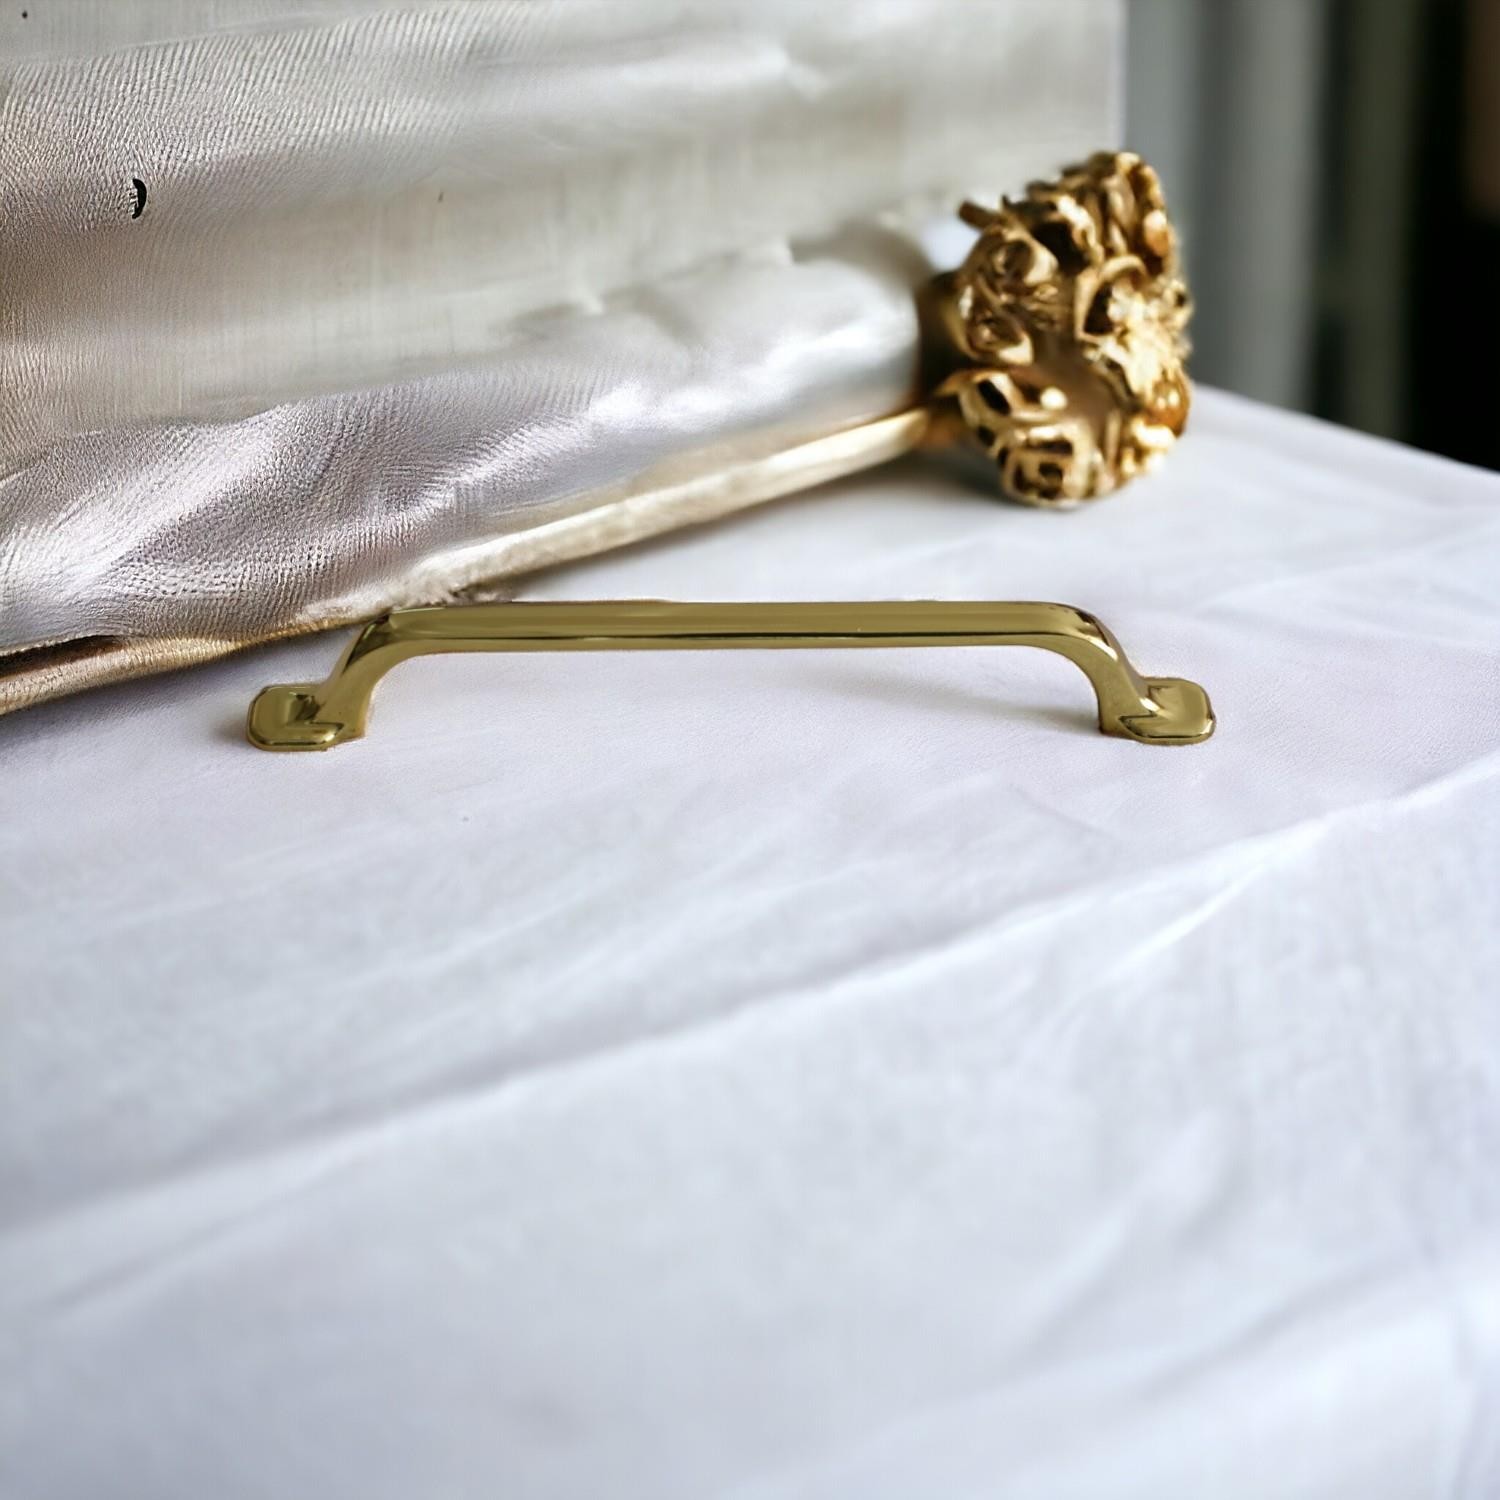 Zümre Kulp Mobilya Mutfak Dolabı Çekmece Dolap Kulpları Kulbu Kapak Kulpu 160 mm Gold Altın